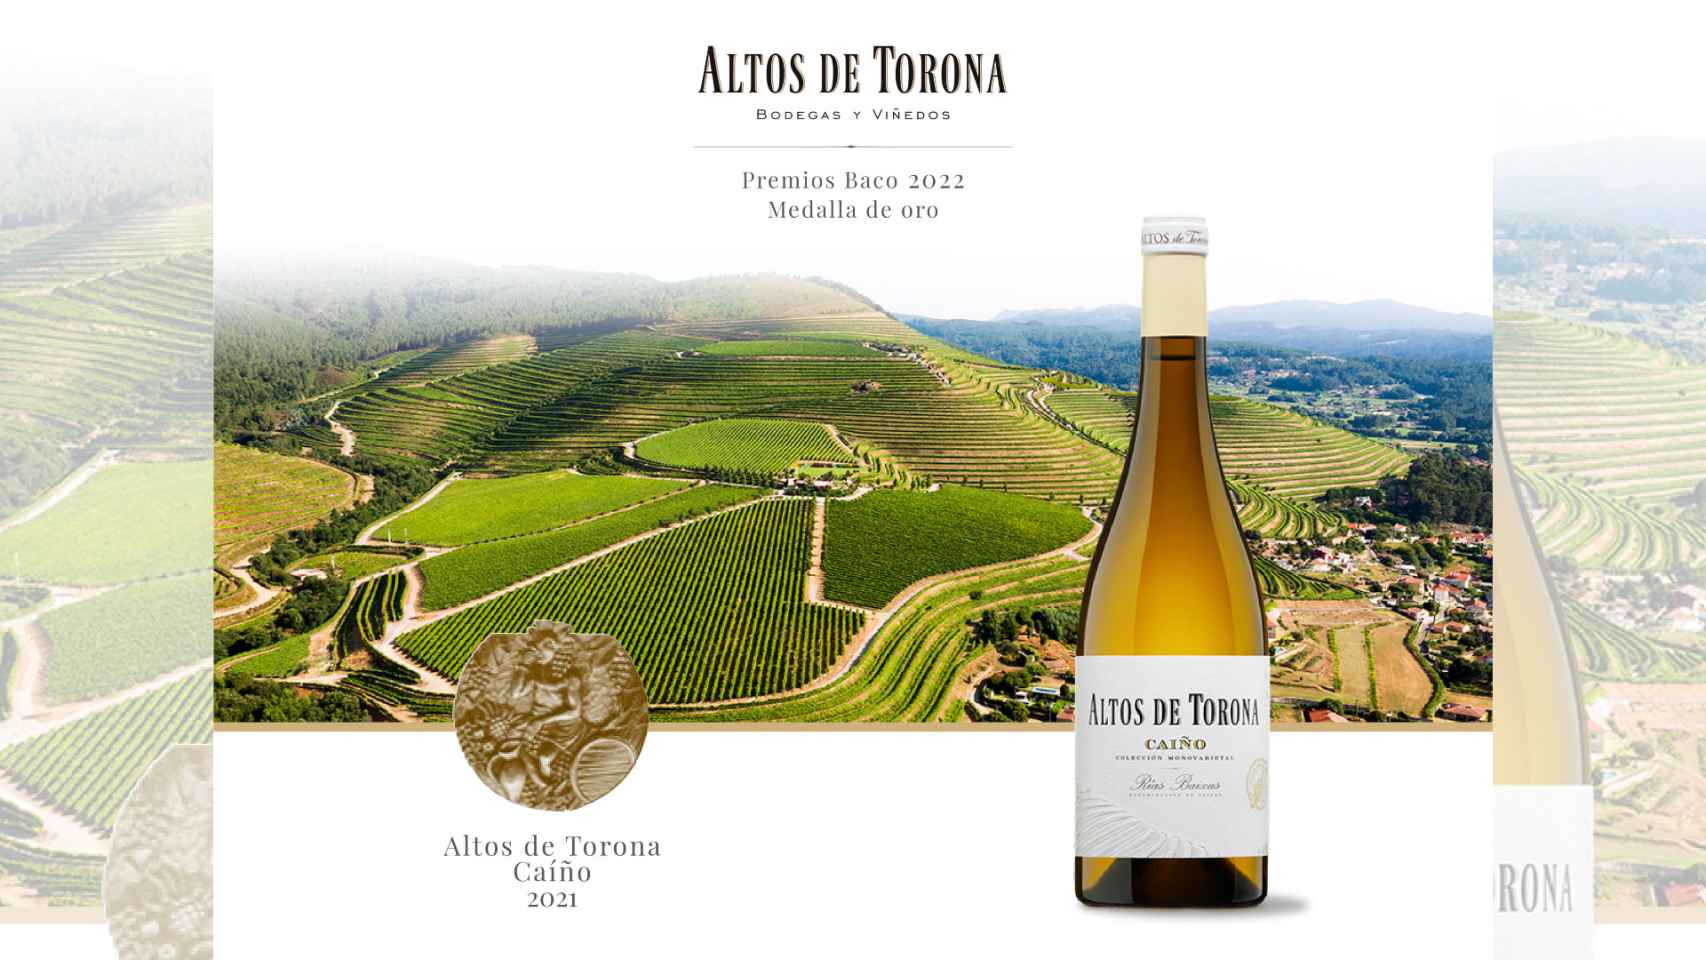 El vino gallego Altos de Torona Caiño, primer Caiño Blanco de España con un Baco de Oro